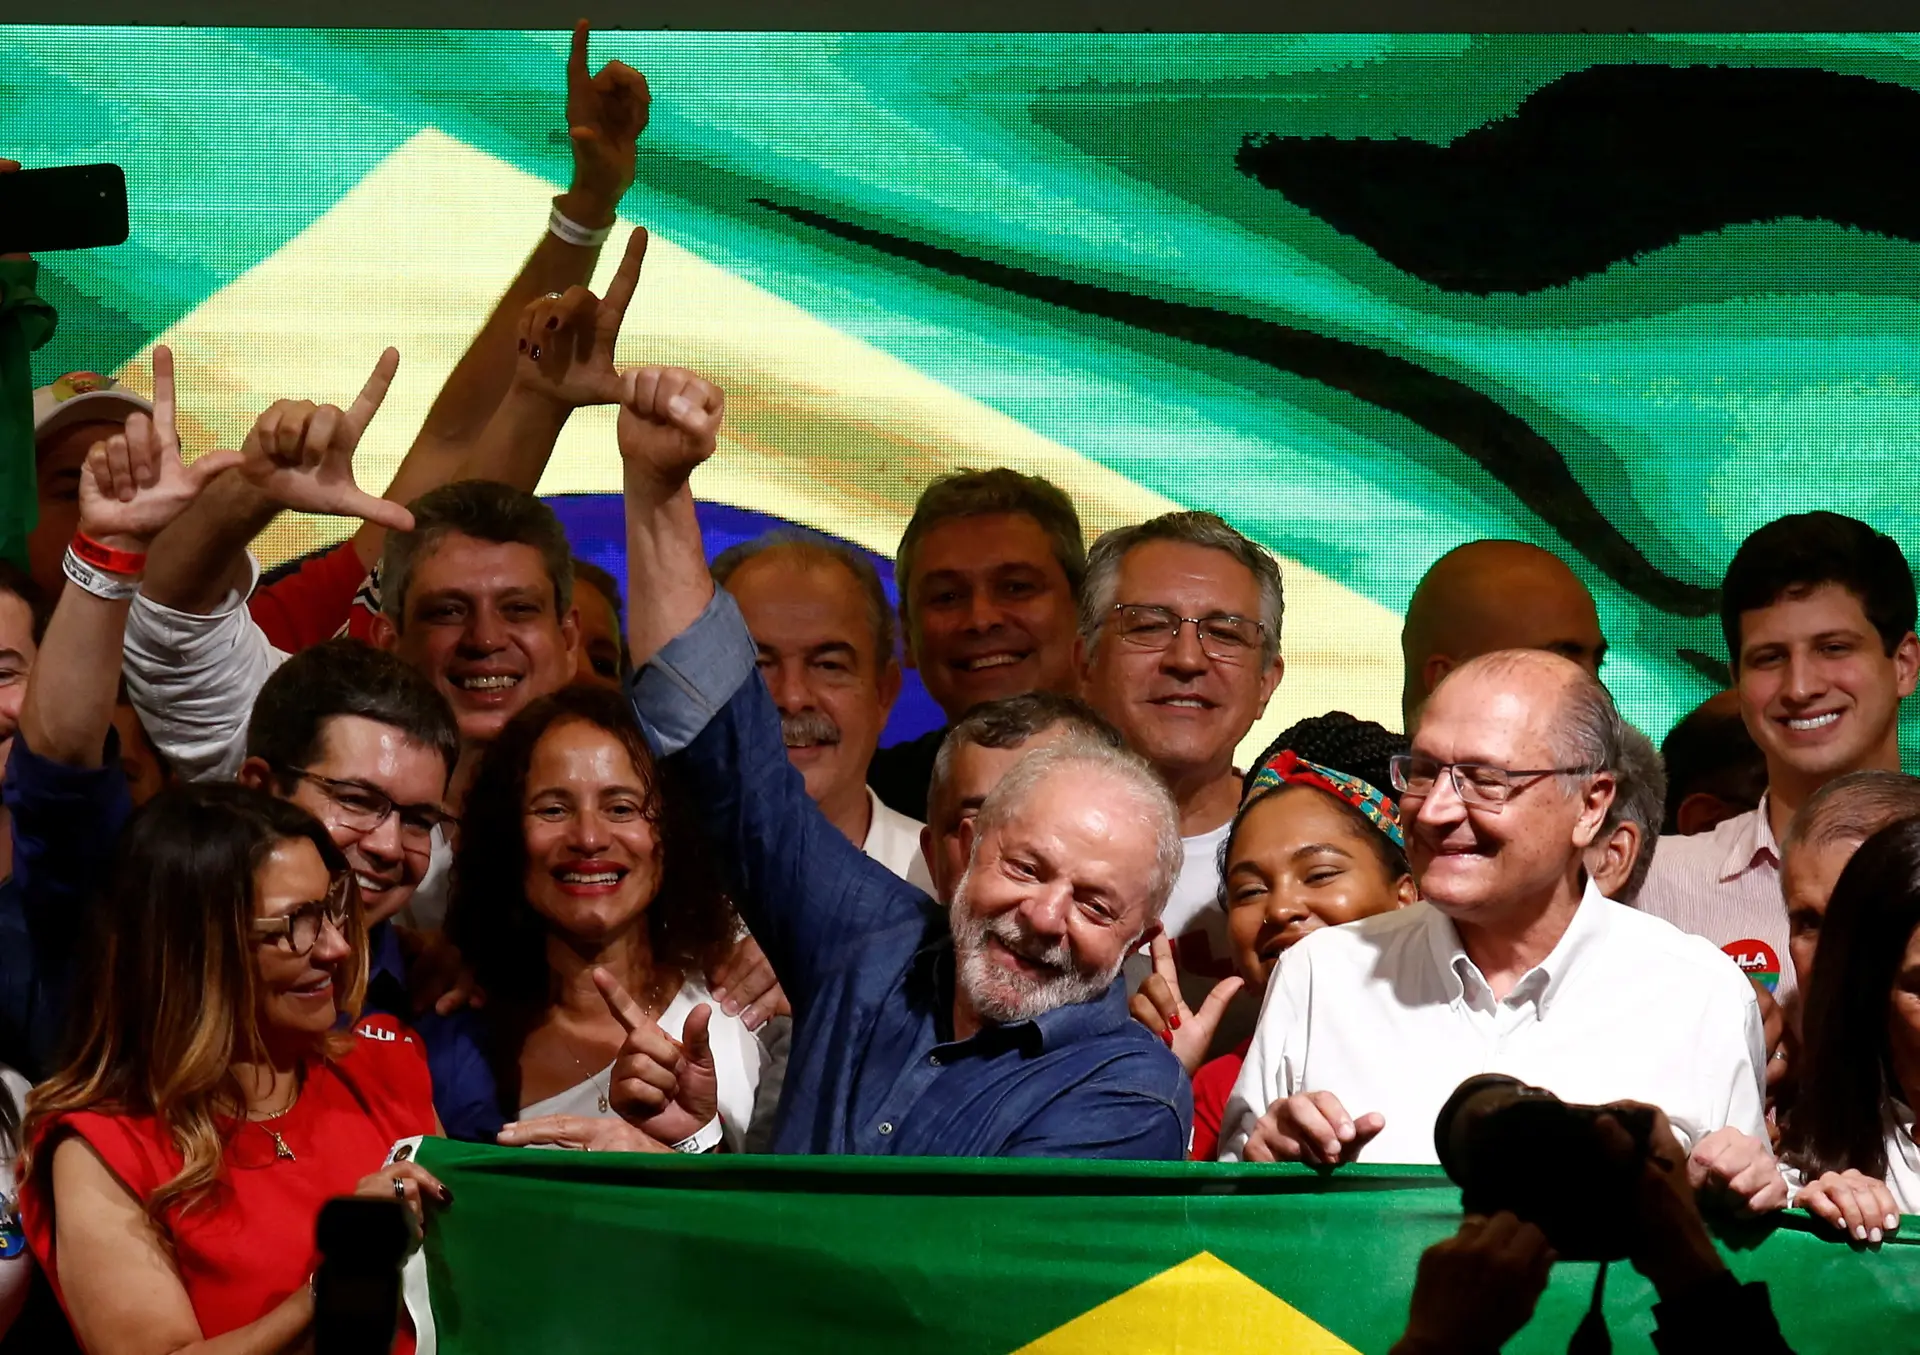 VITÓRIA. Lula da Silva arrebatou o Palácio do Planalto a Jair Bolsonaro, mas herda dele um Brasil profundamente dividido